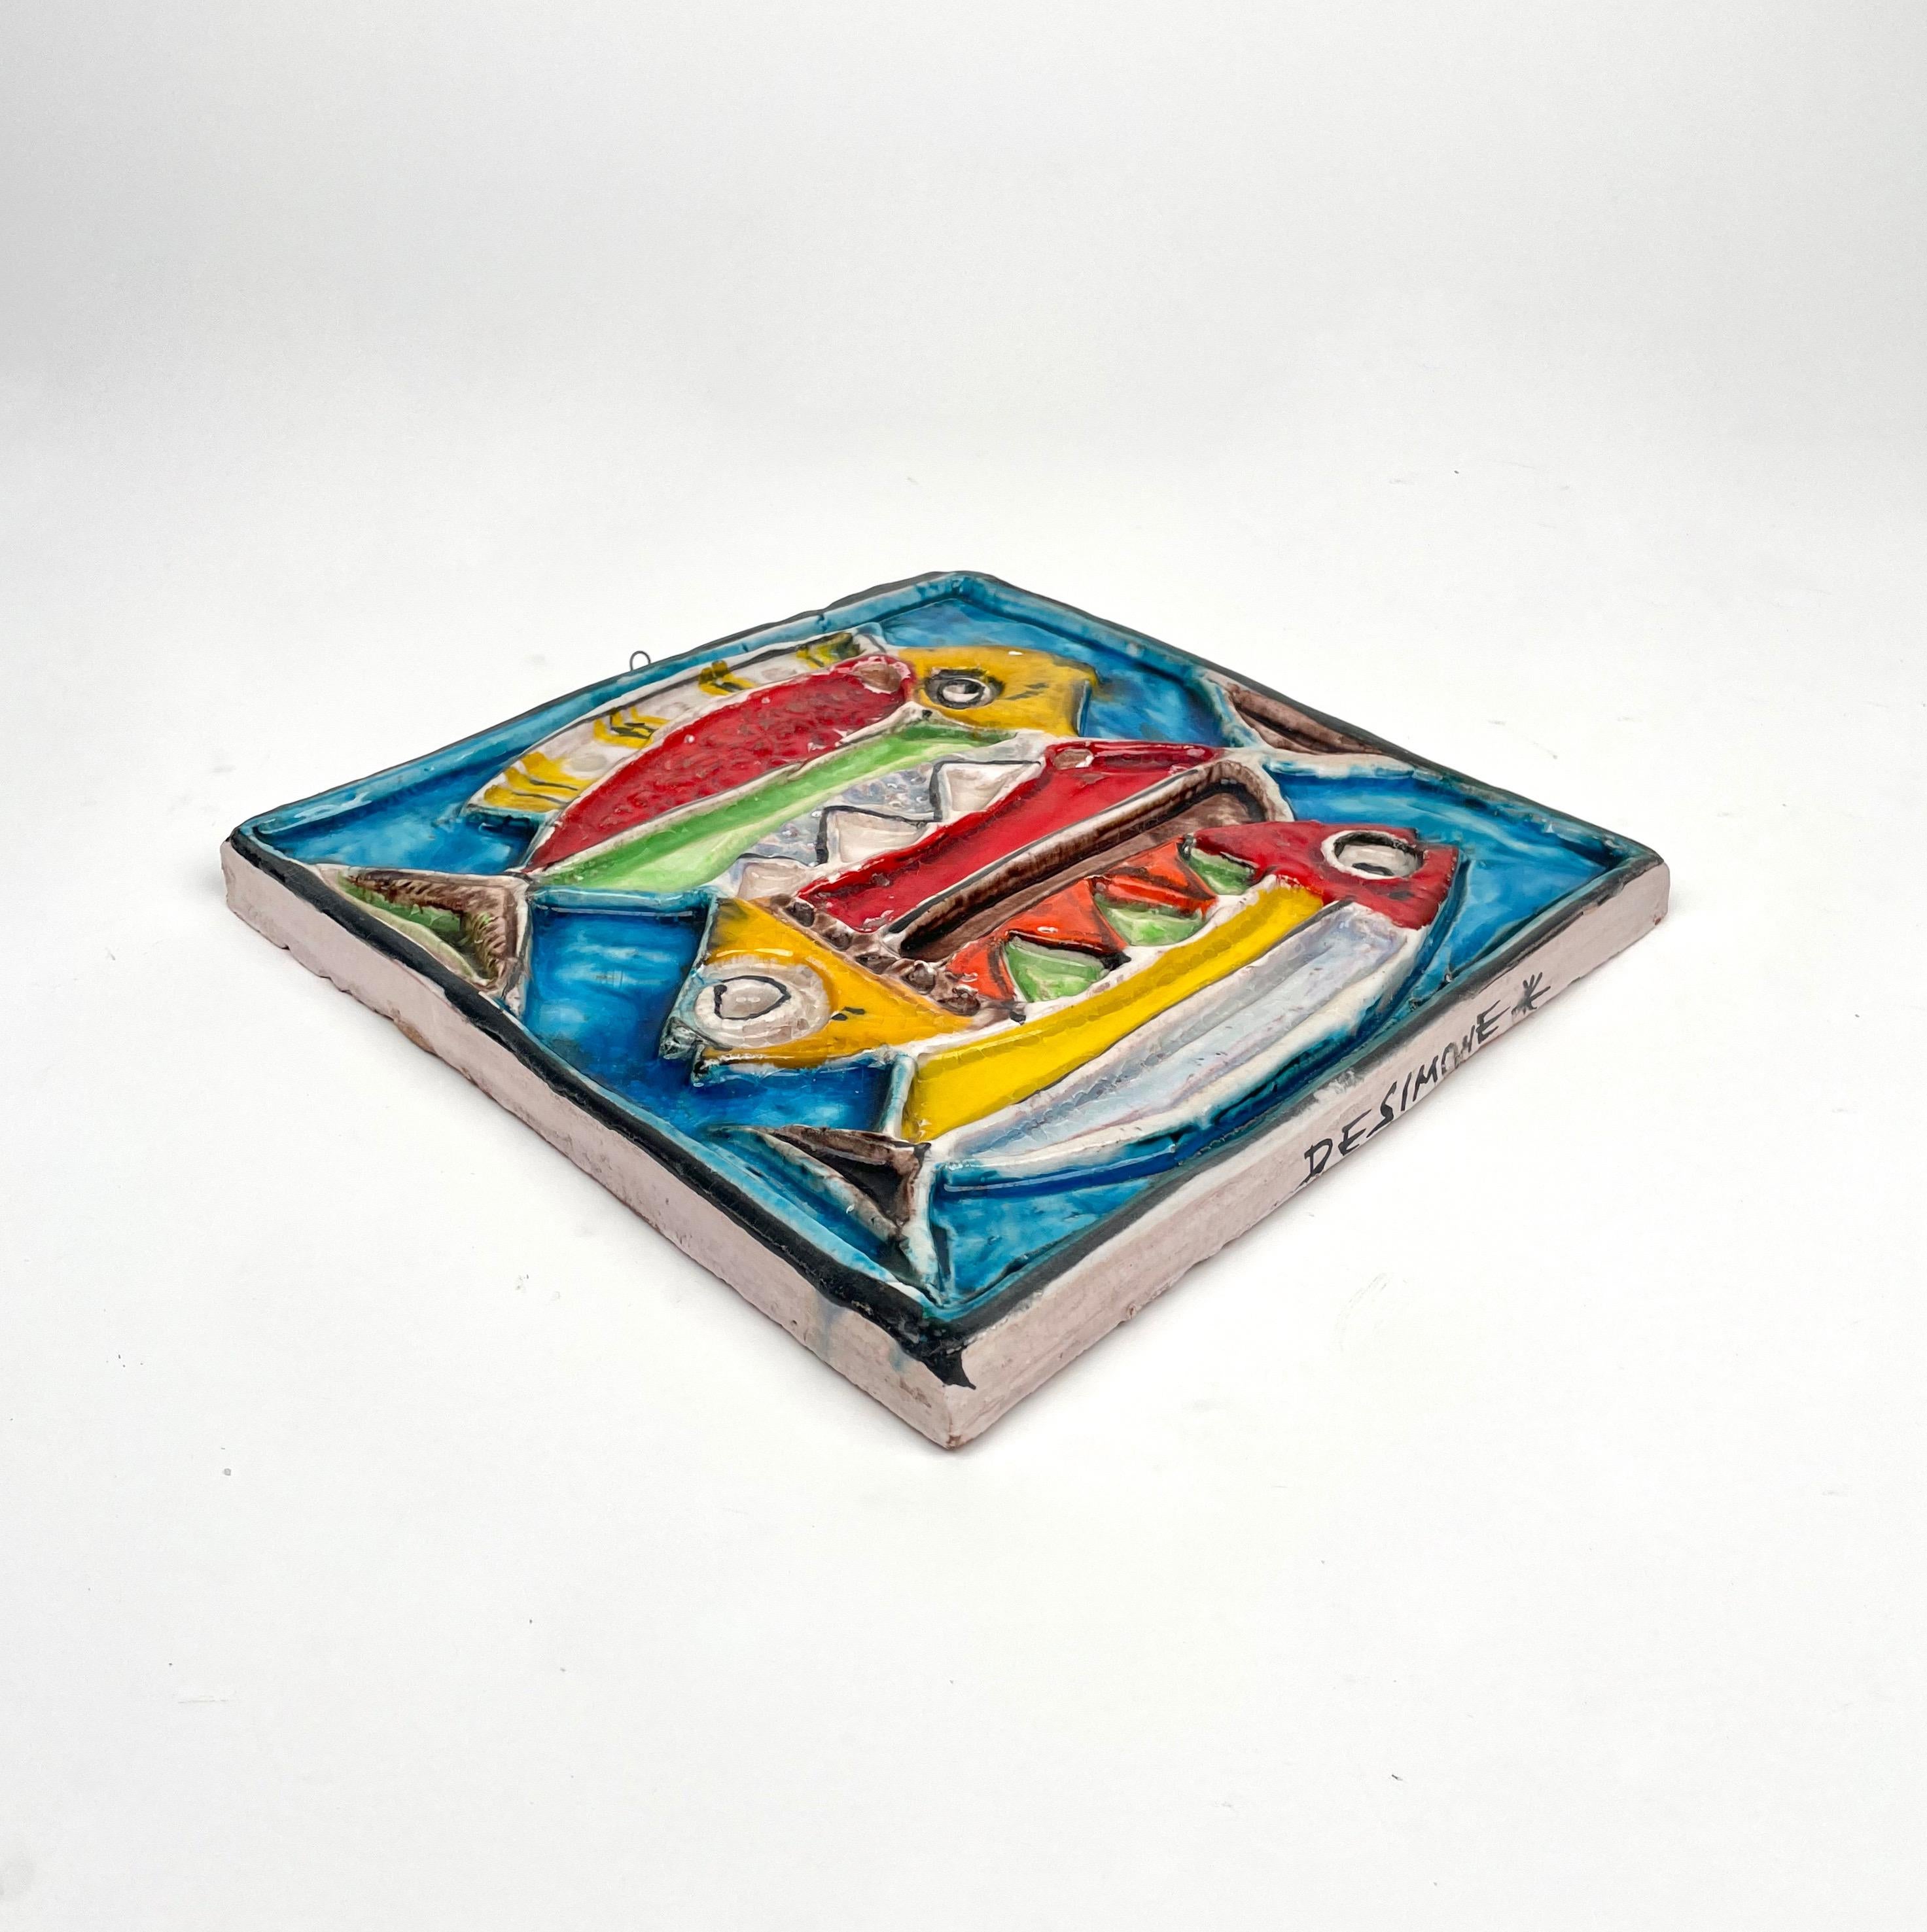 Italian Giovanni de Simone Colored Ceramic Fish Squared Tile Plate, Italy 1960s For Sale